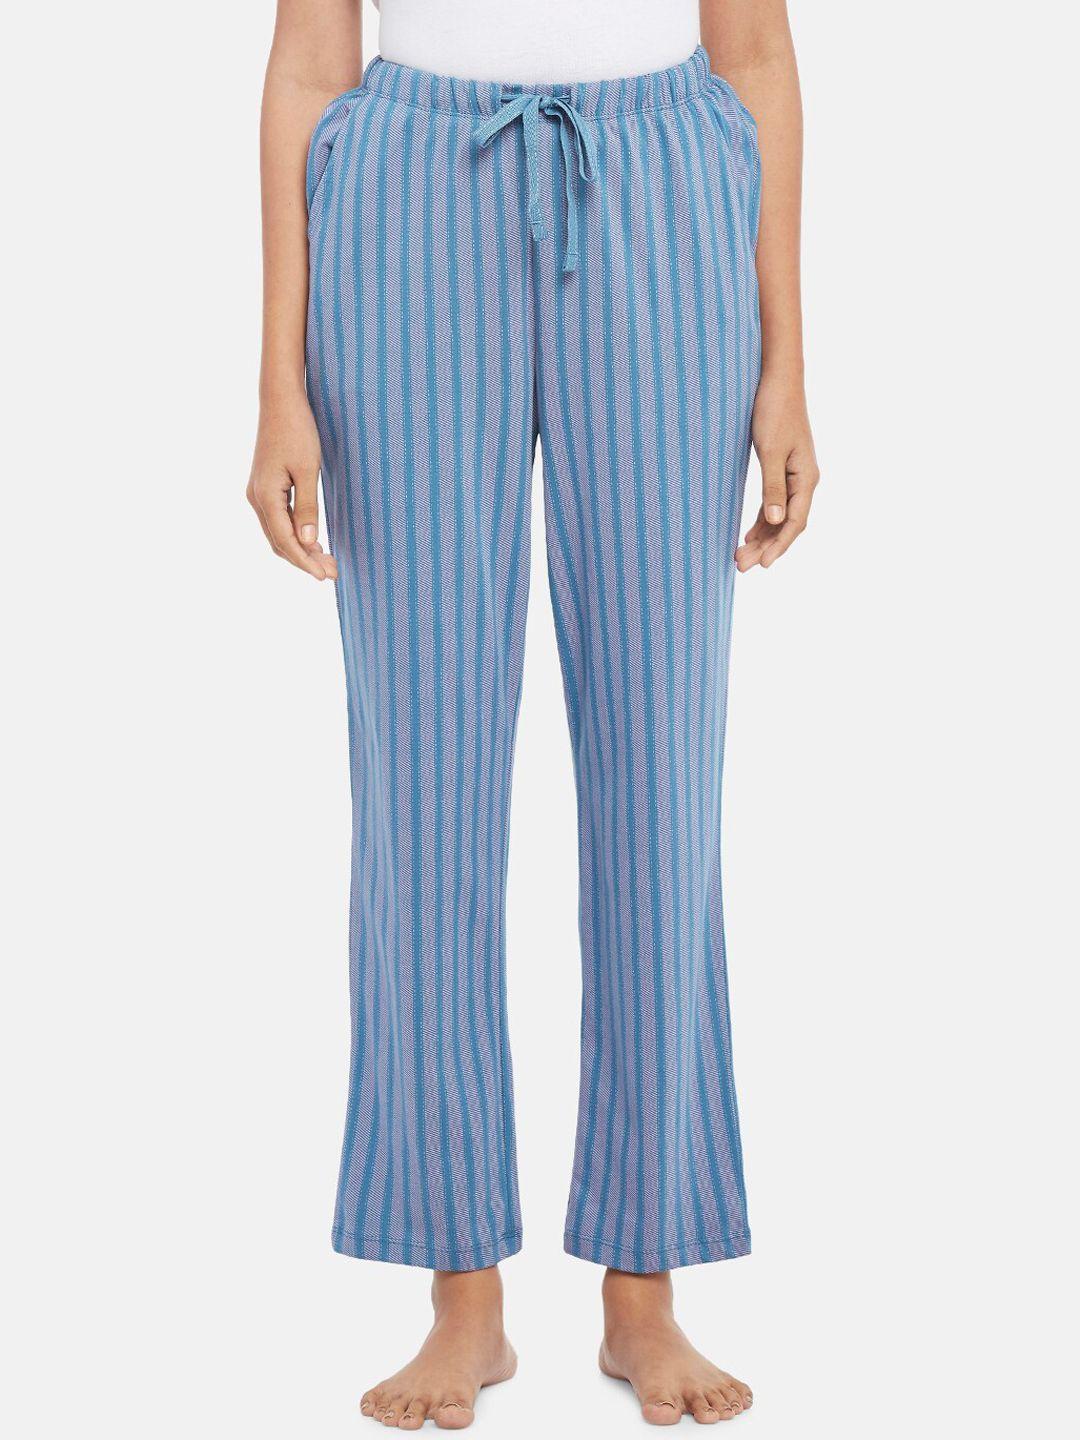 dreamz by pantaloons women striped lounge pant